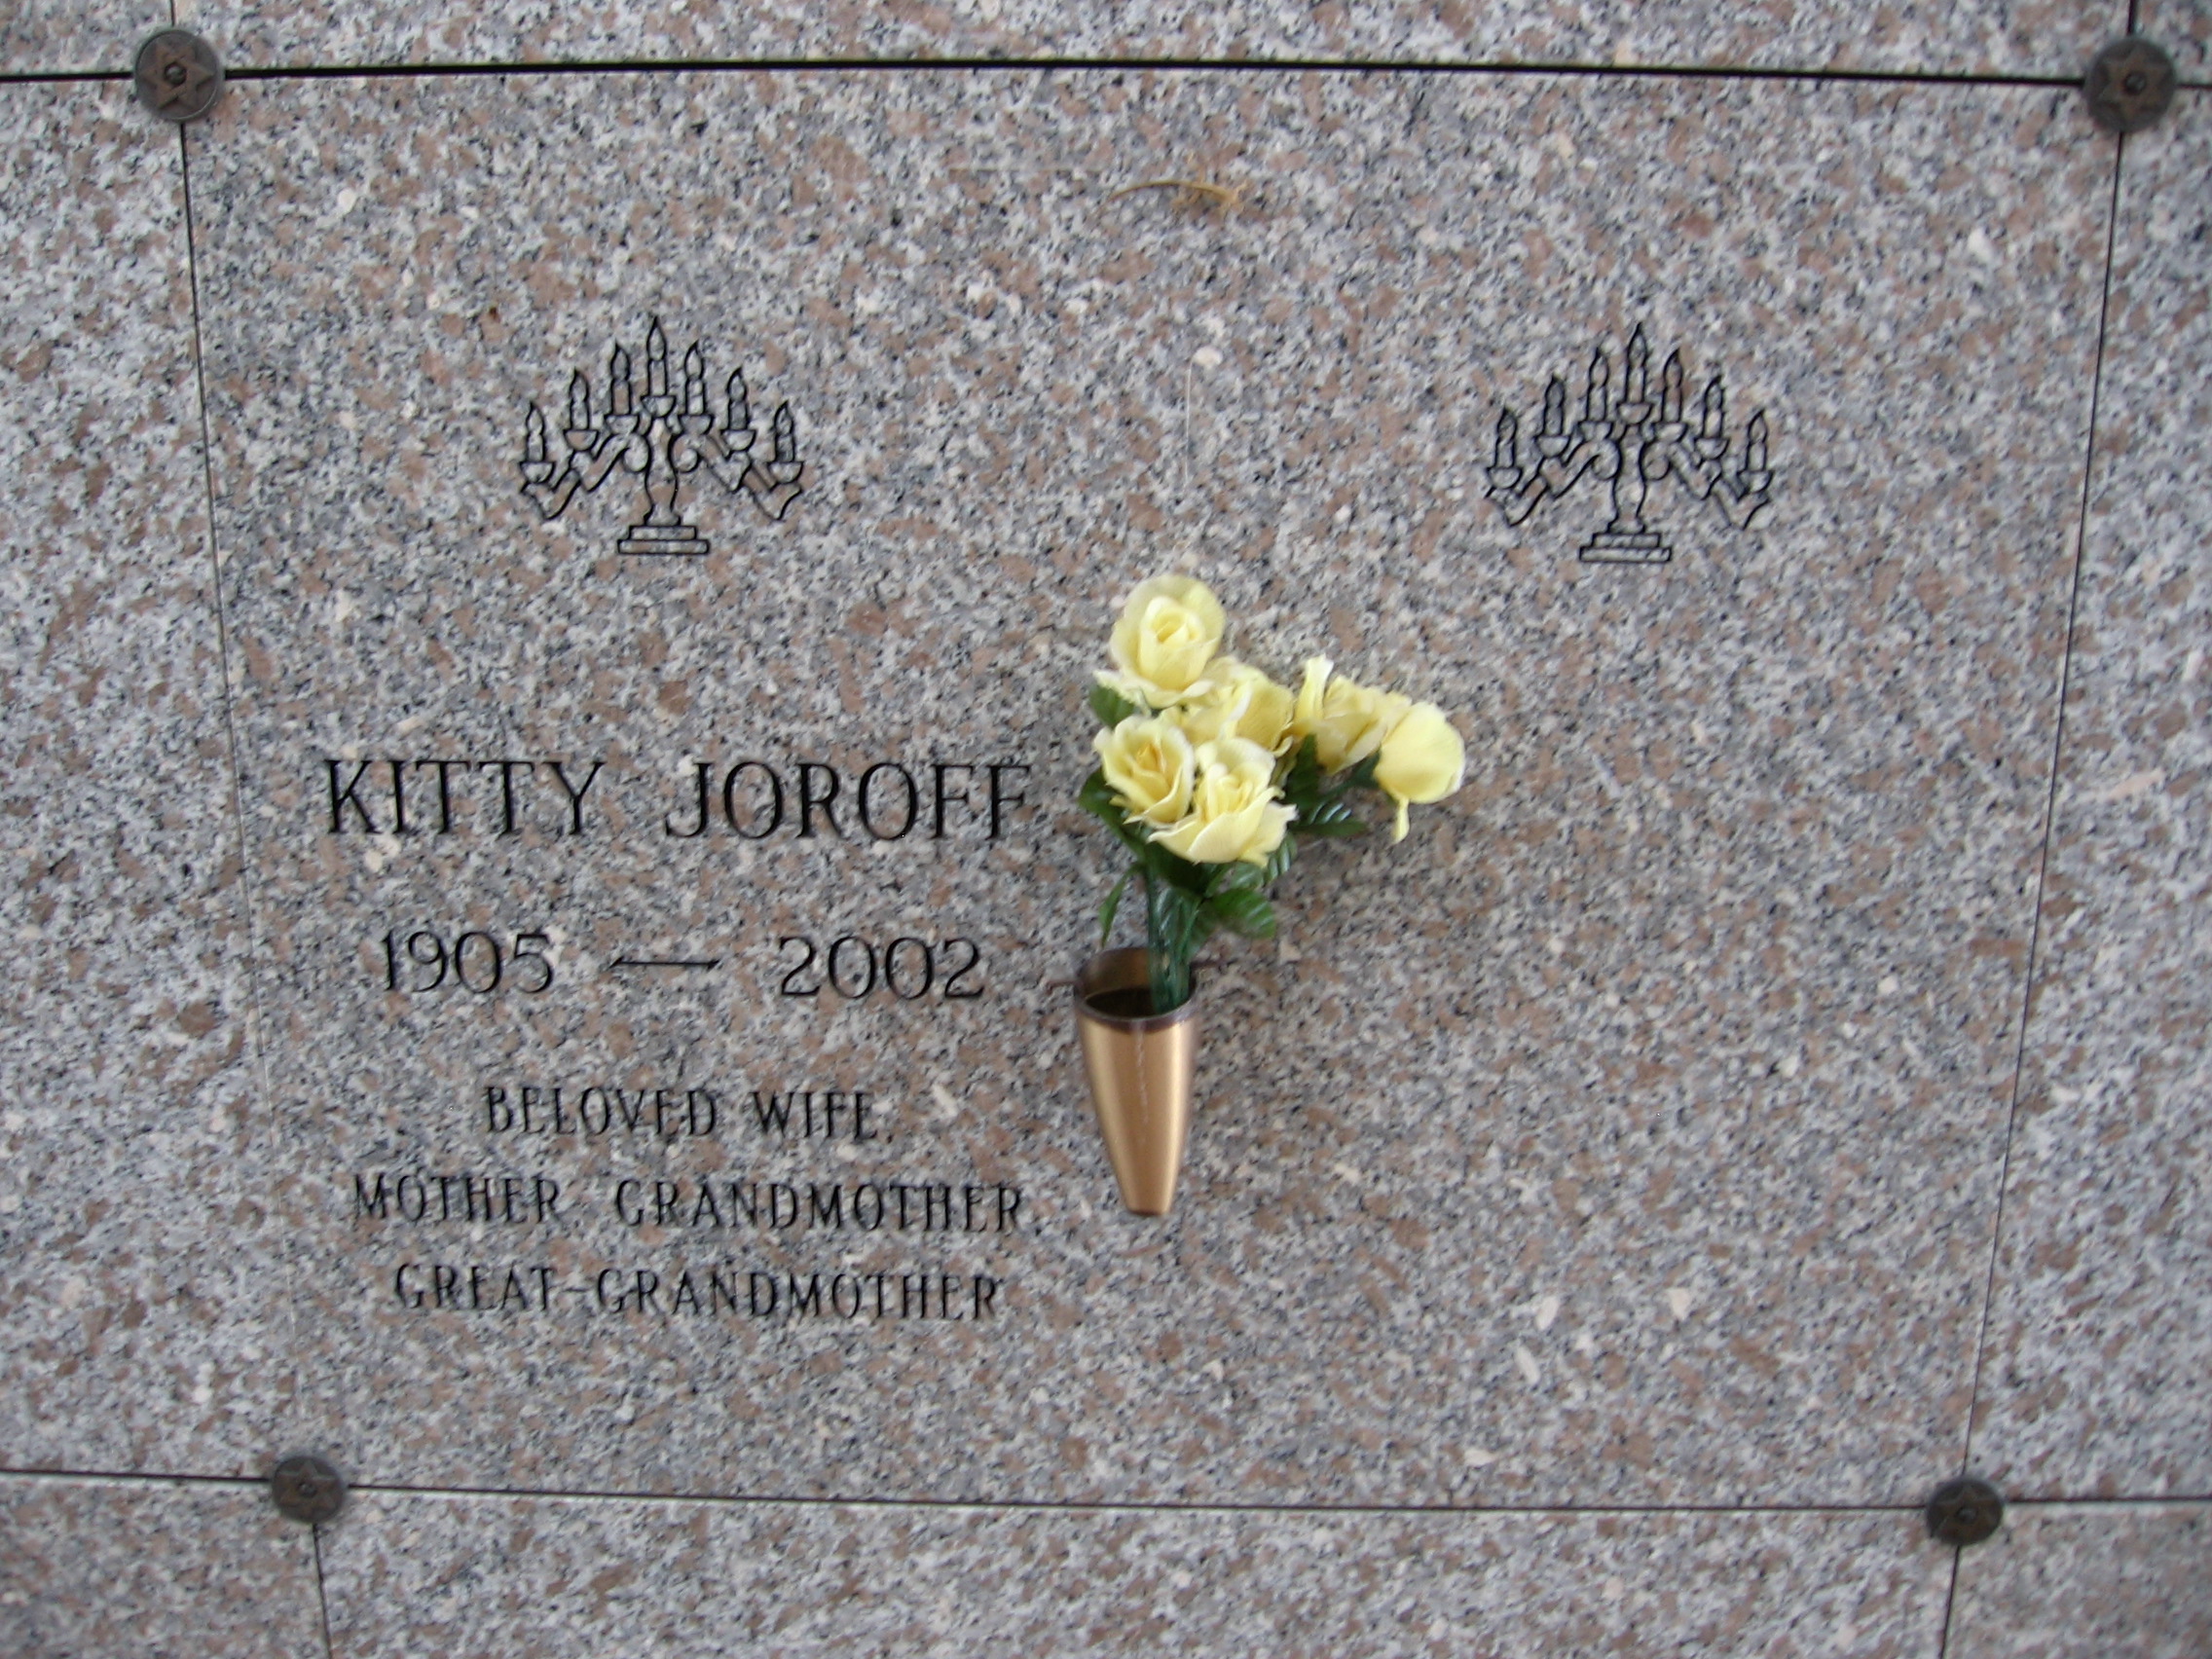 Kitty Joroff